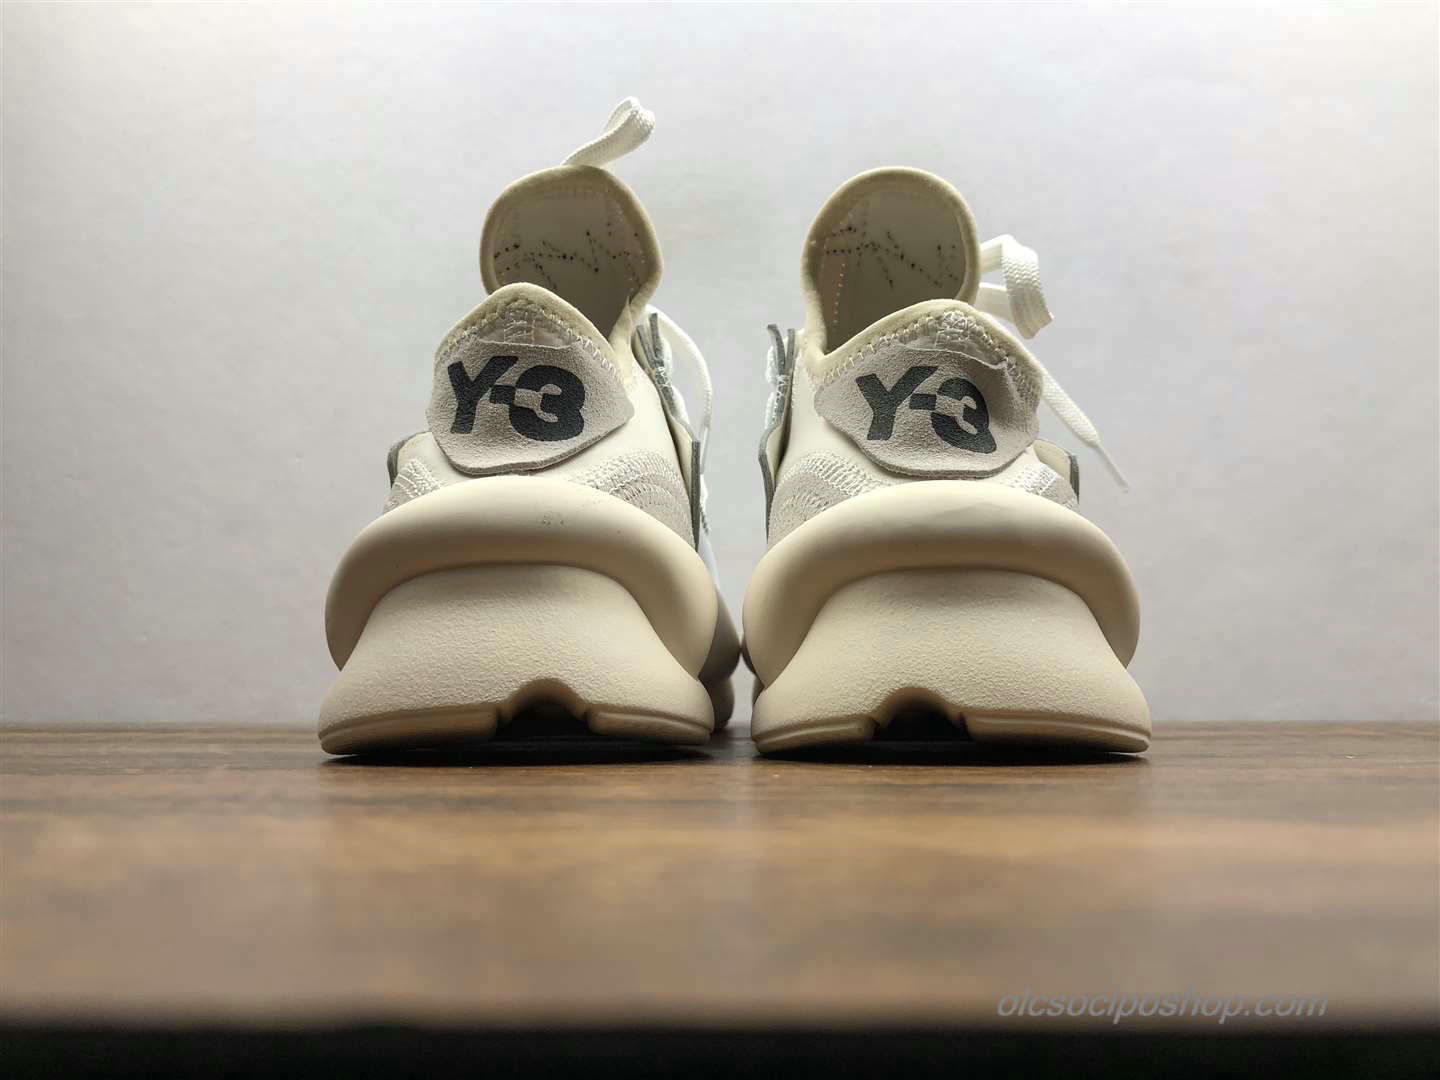 Yohji Yamamoto x Adidas Y-3 Kaiwa Chunky Világos szürke/Piszkosfehér Cipők (A1860)